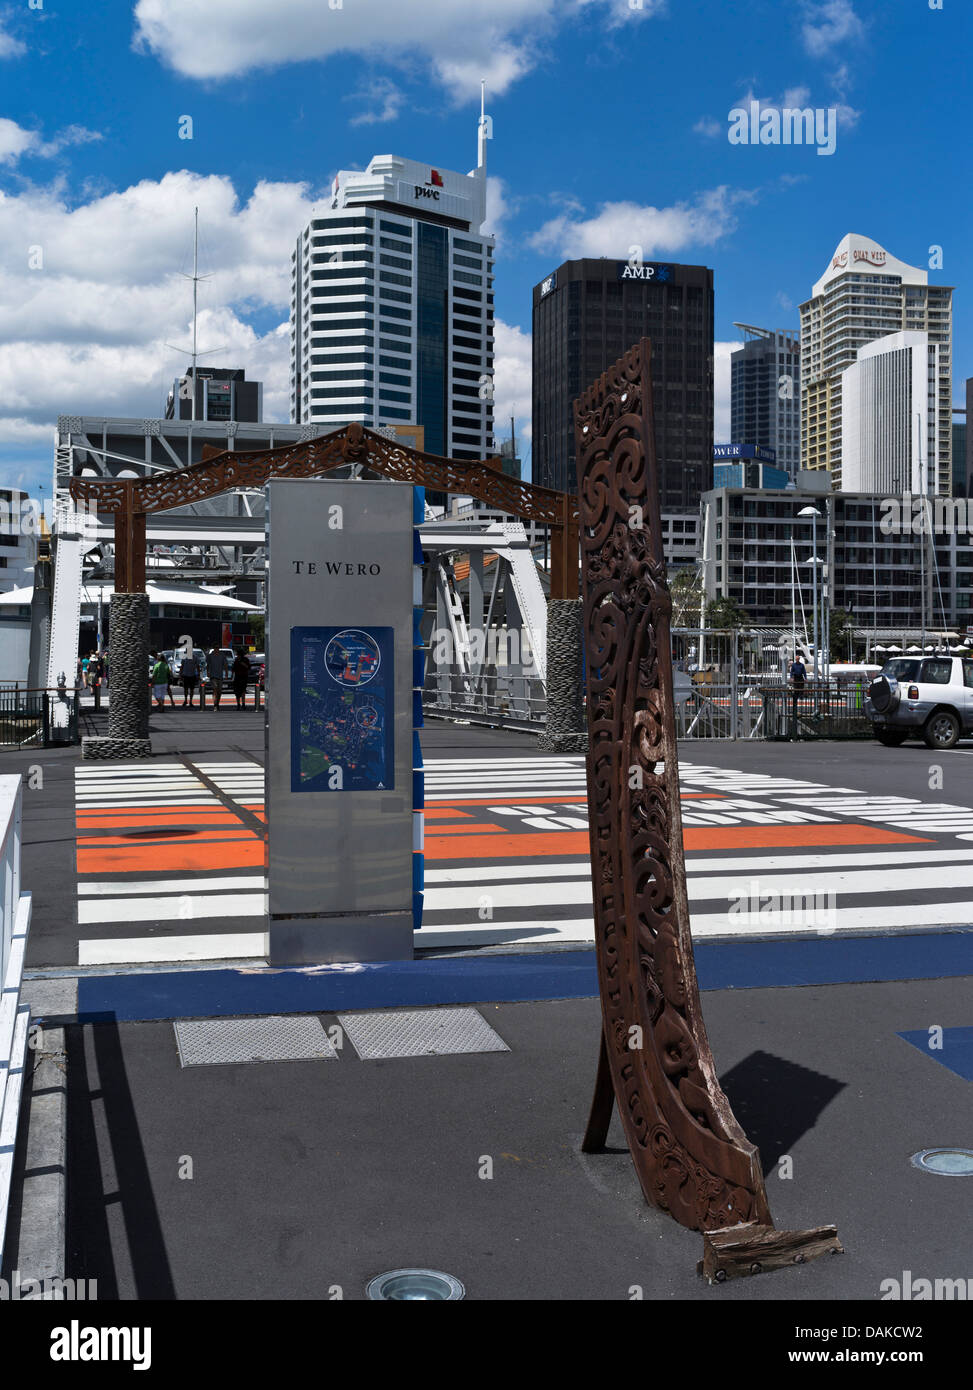 dh Viaduct Basin AUCKLAND NOUVELLE-ZÉLANDE te WERO signpost et sculpture Auckland front de mer gratte-ciel bâtiments port pont Banque D'Images